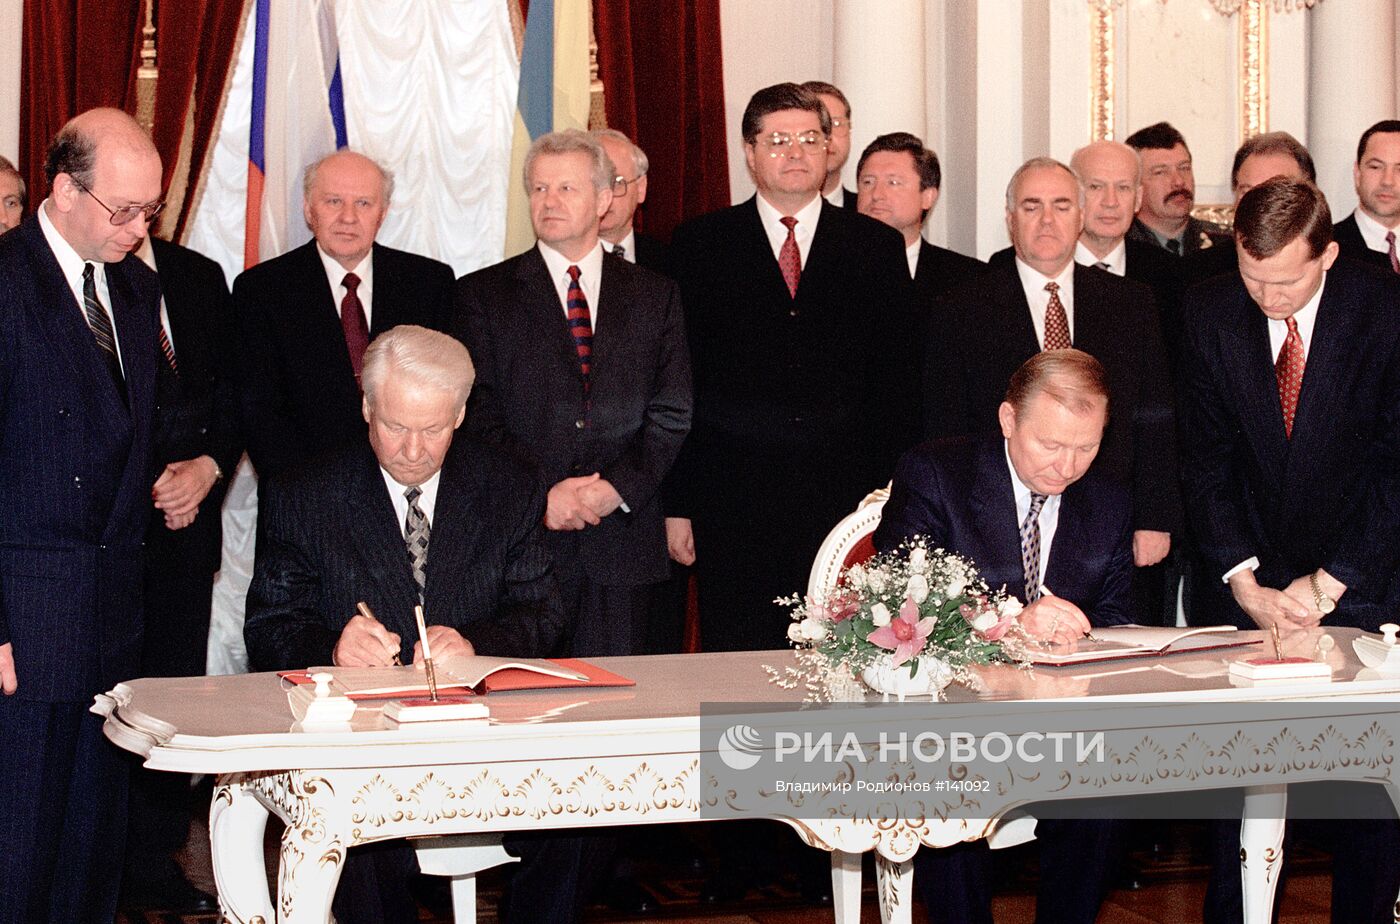 Подписания договора между Россией и Украиной